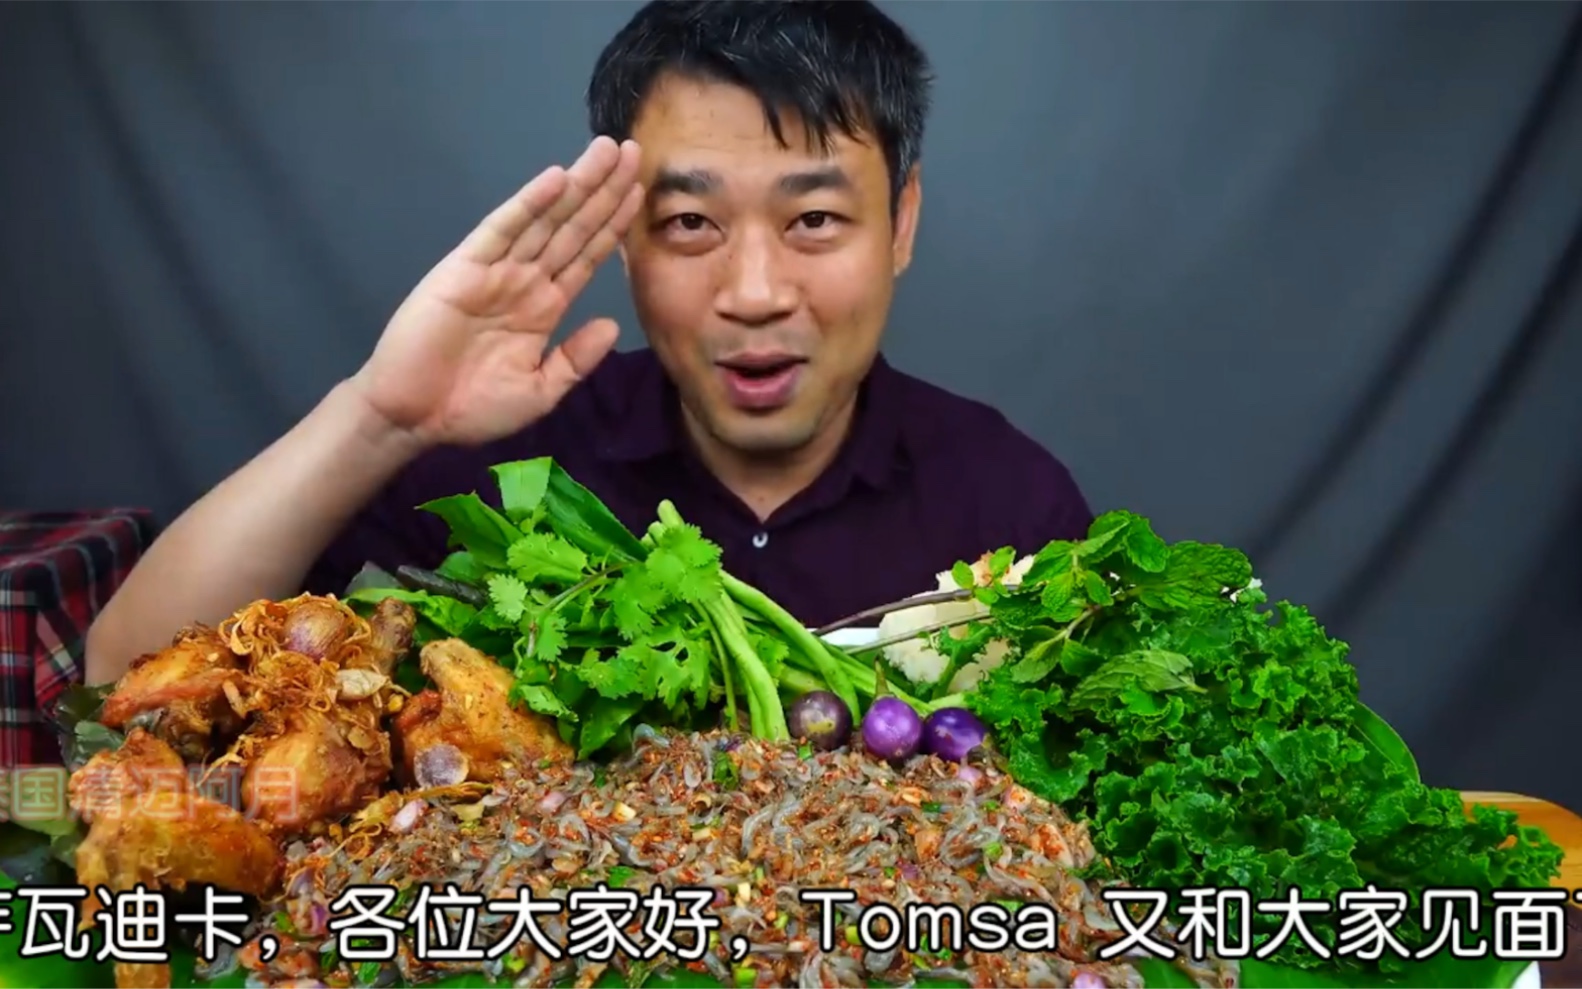 泰国Tomsa 带你吃凉拌跳虾 小虾米去酸辣可口 配炸鸡腿 馋哭了 中文字幕